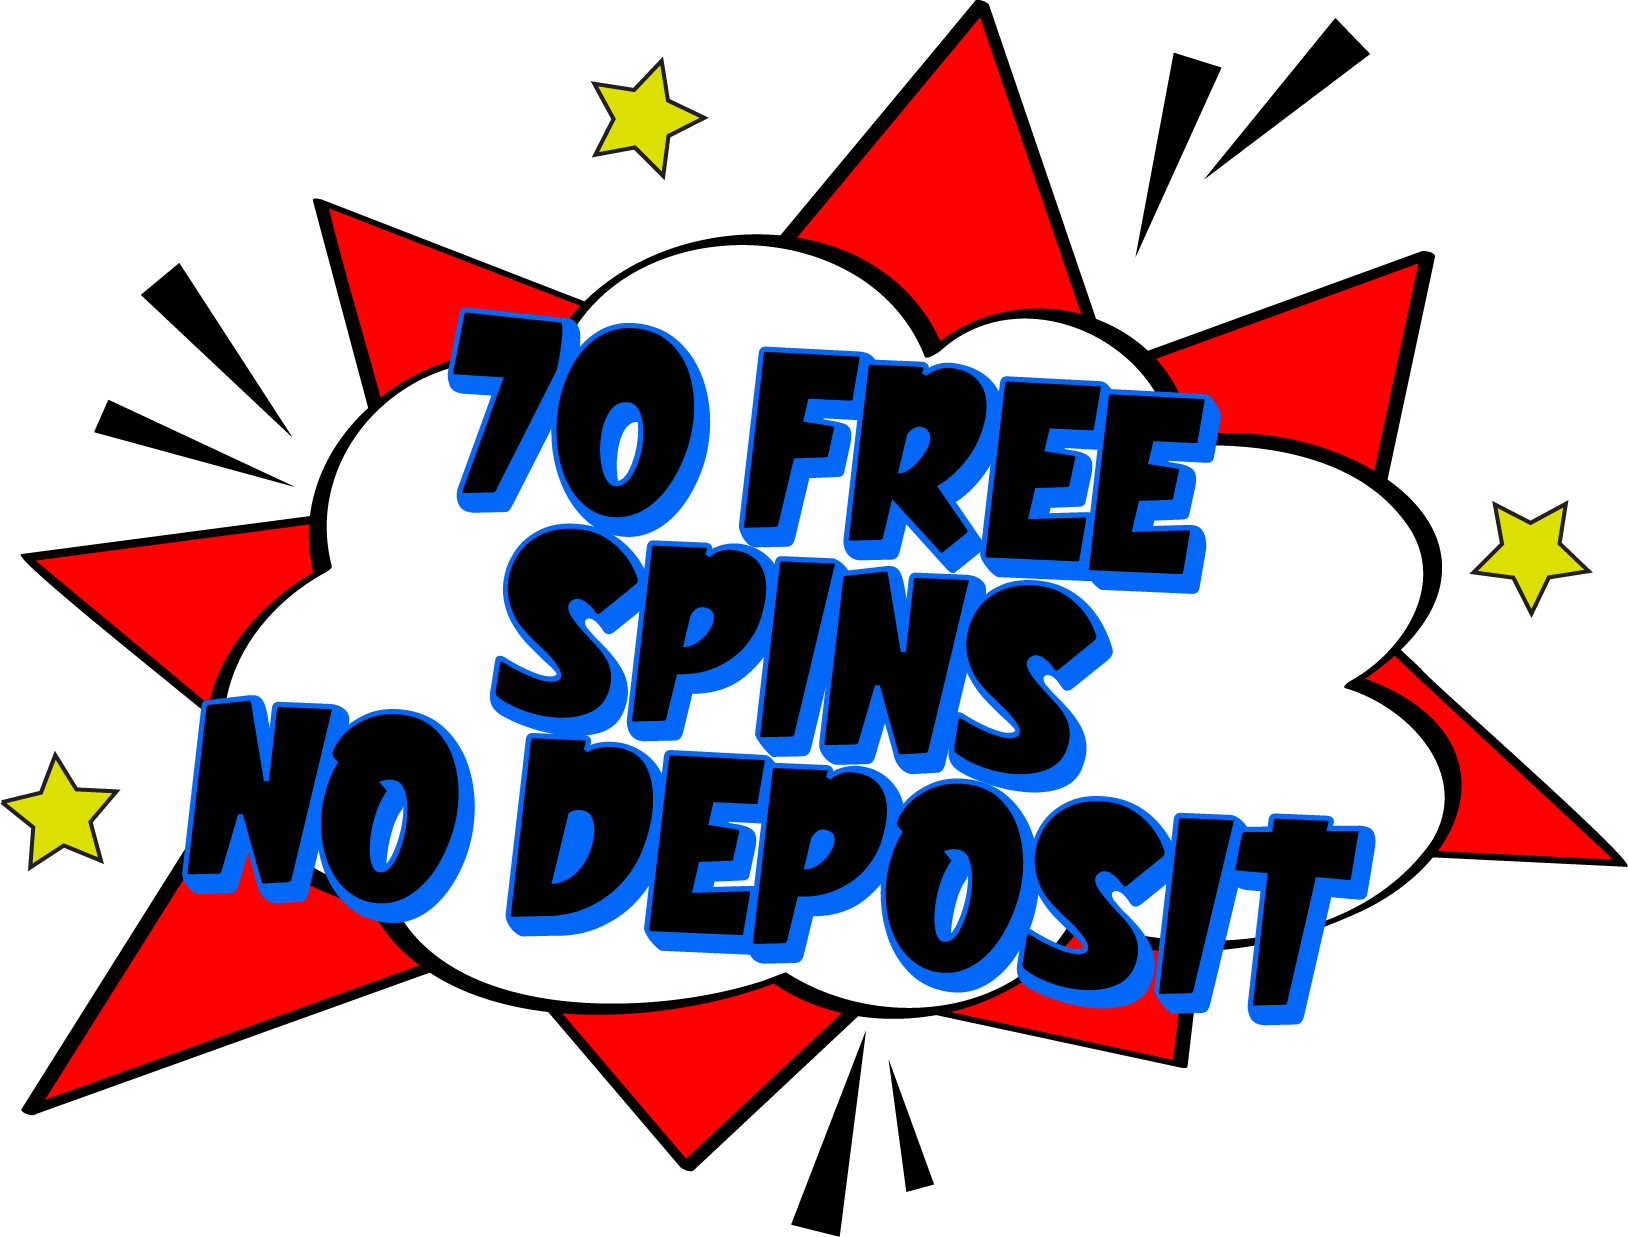 70 Free Spins No Deposit Bonus Casinos